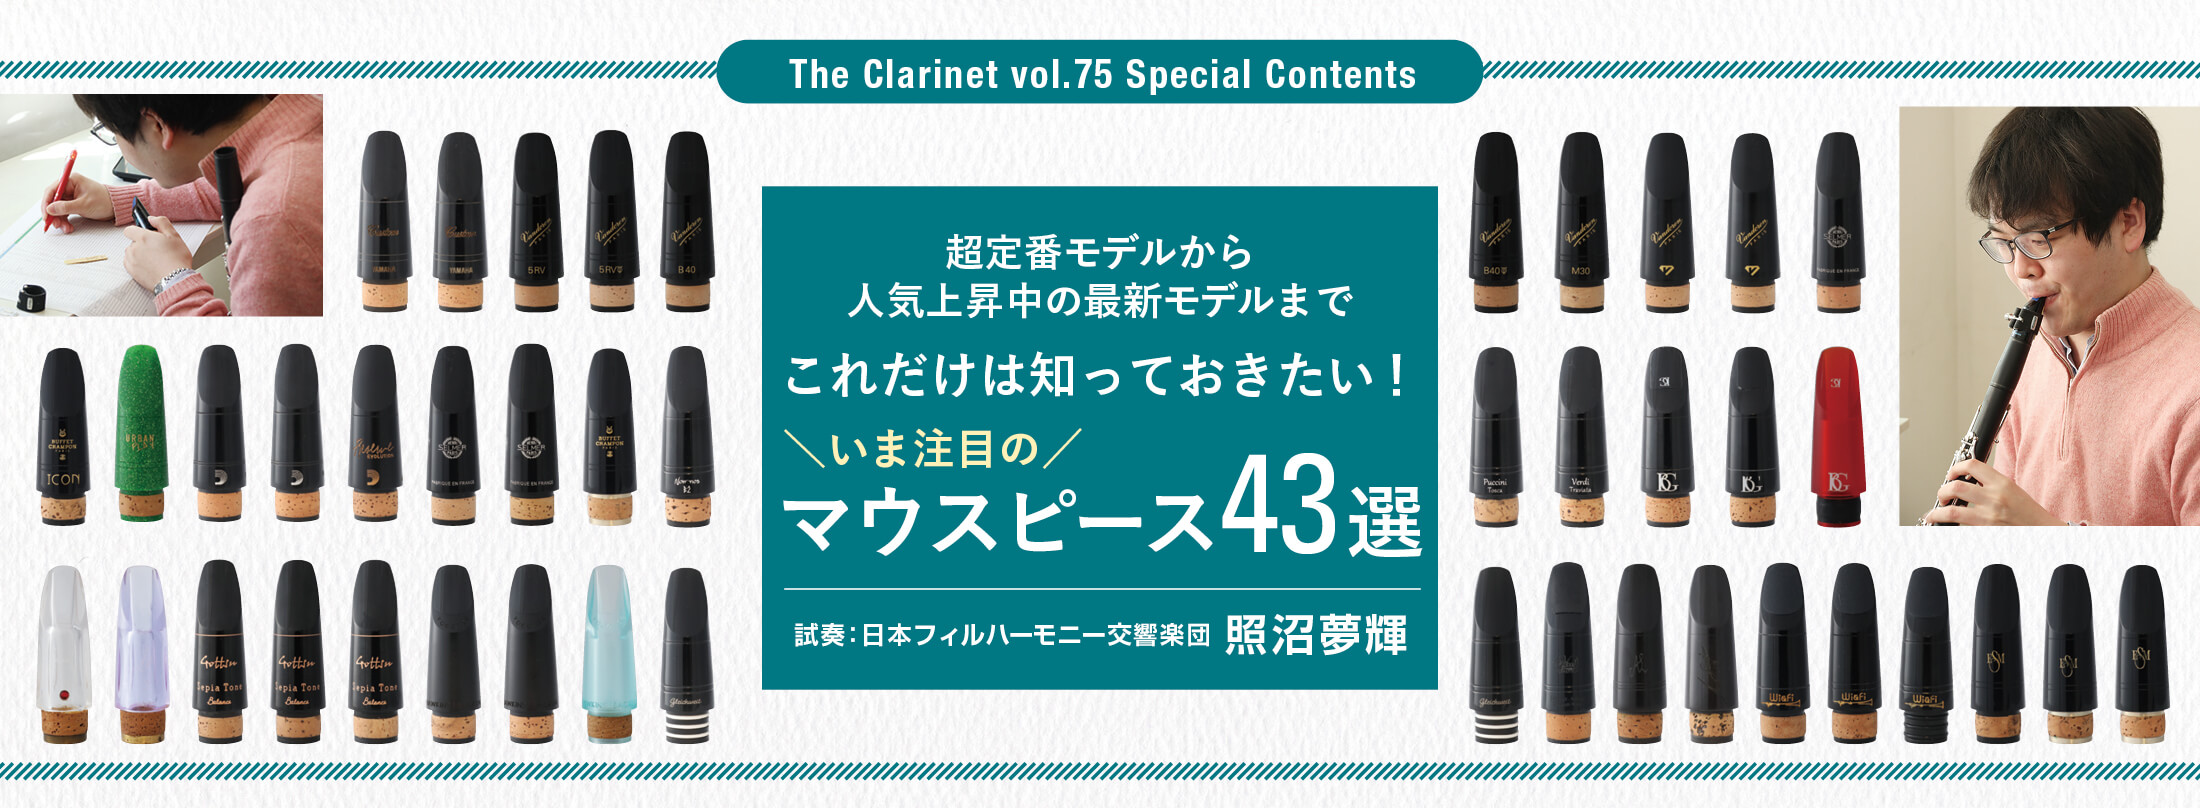 ザ・クラリネット The Clarinet 75号